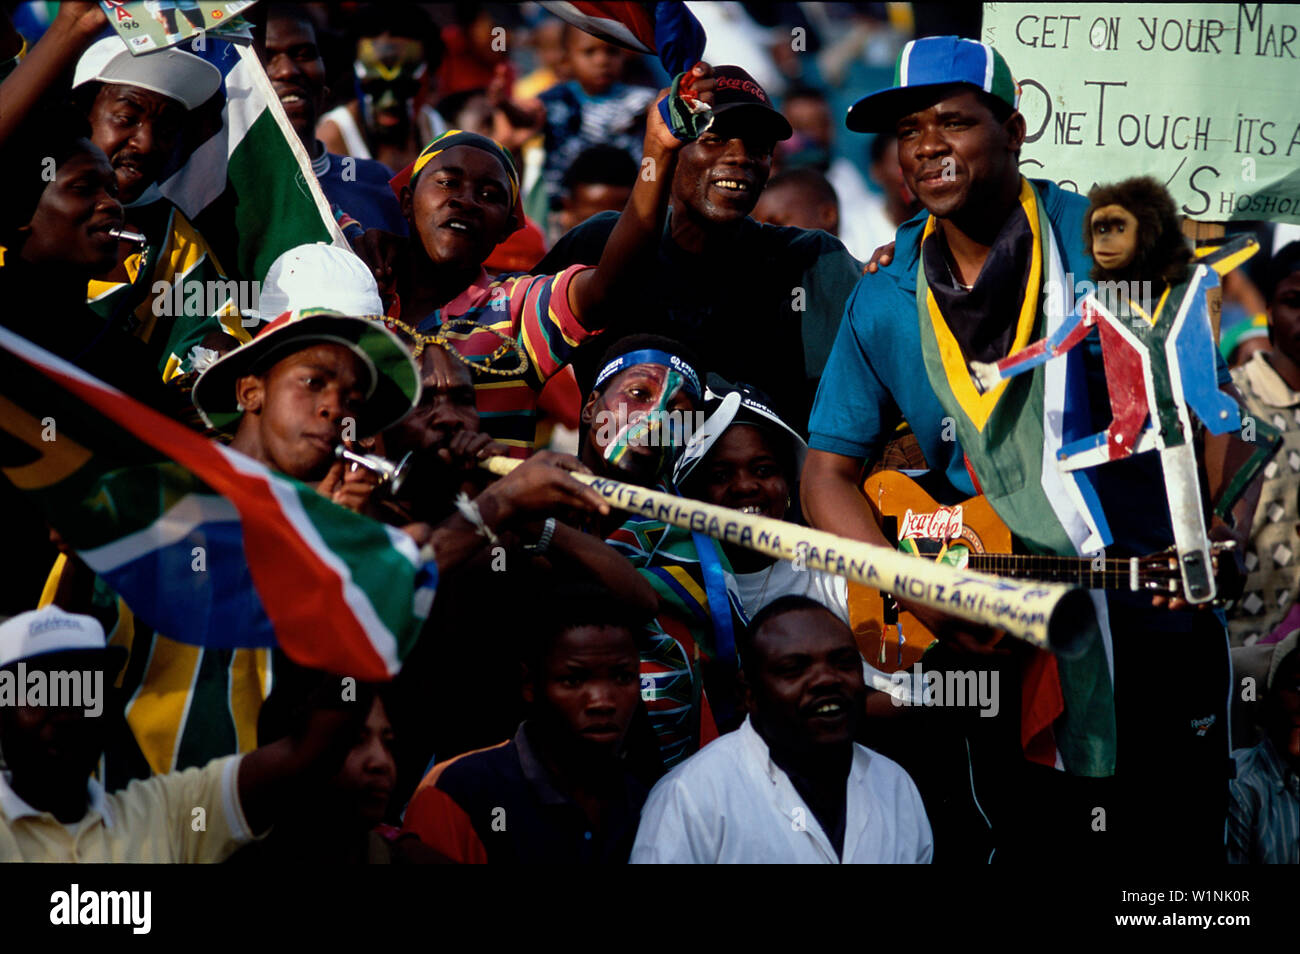 Fussballspiel, Soweto-Stadion, Johannesburg Suedafrika Stock Photo